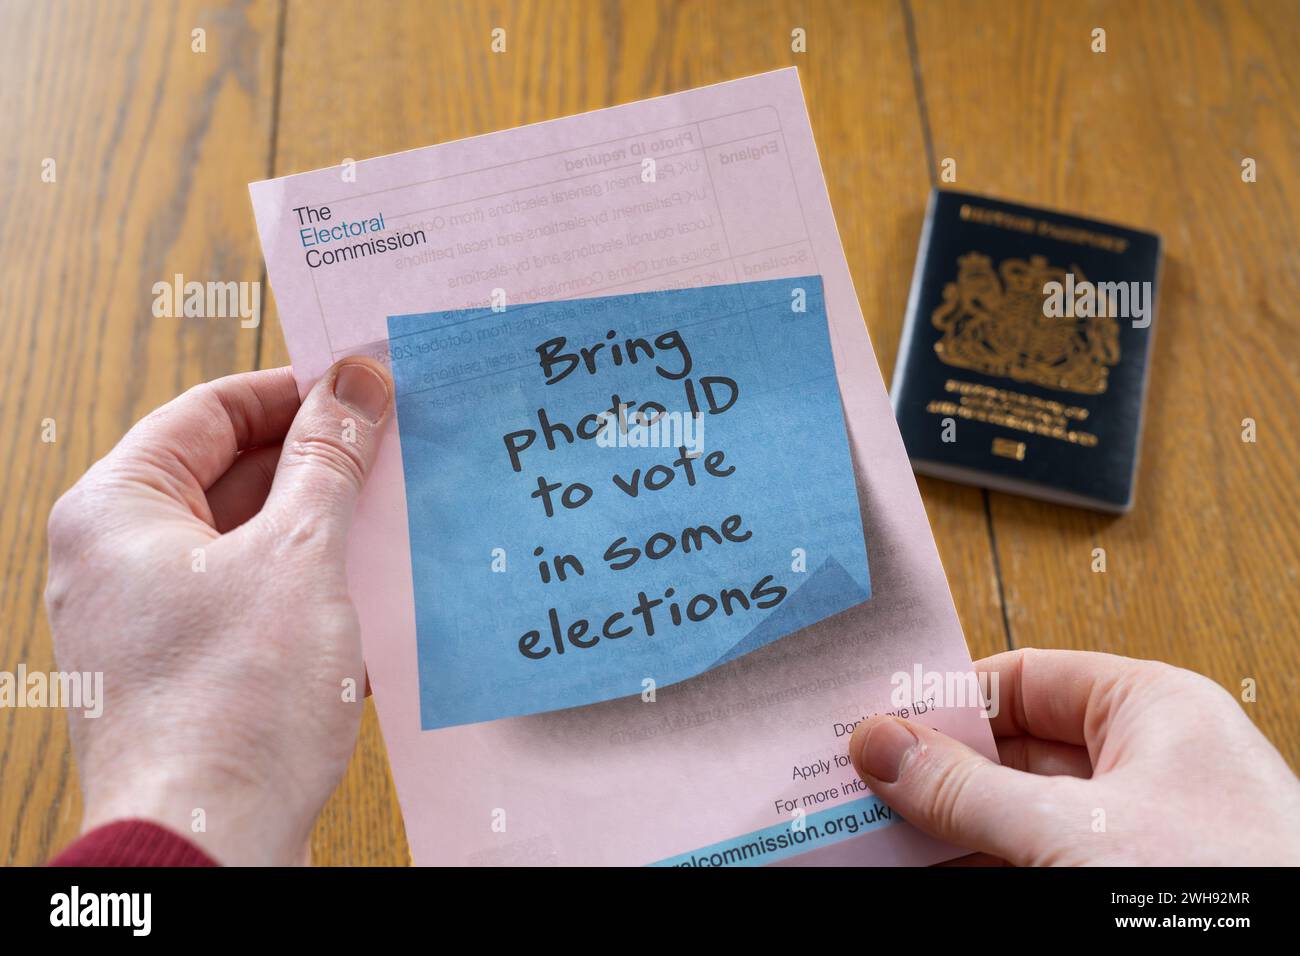 Ein Mann mit einem Flyer der wahlkommission, in dem angegeben wird, dass bei einigen Wahlen ein Lichtbildausweis erforderlich ist, mit einem britischen Reisepass im Hintergrund. England Stockfoto